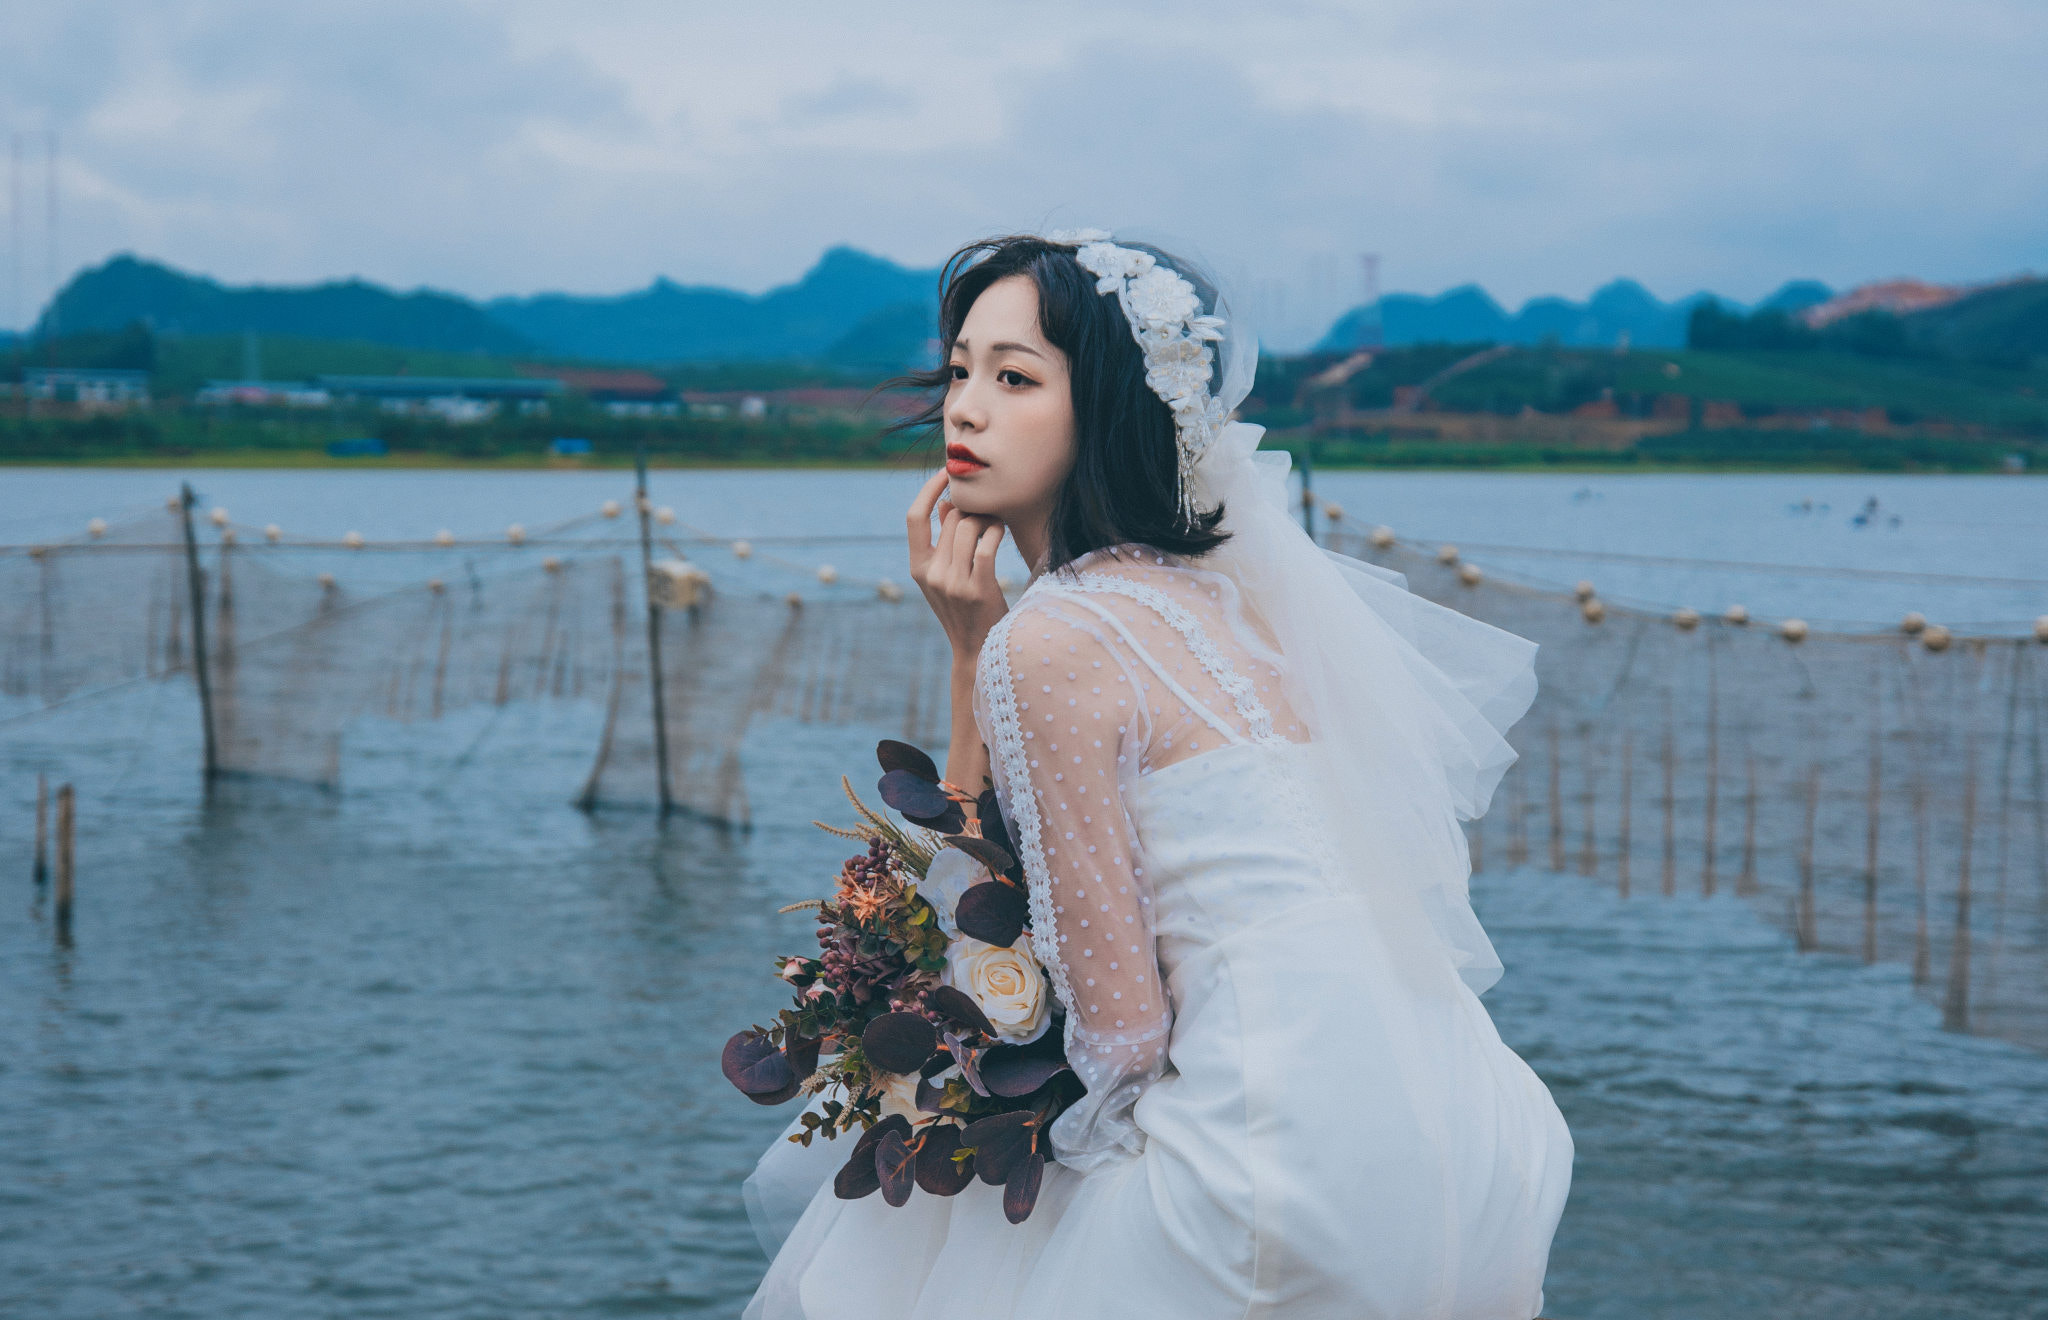 Qin Xiaoqiang Women Asian Dark Hair Wedding Dress Flowers Makeup Water 2048x1320